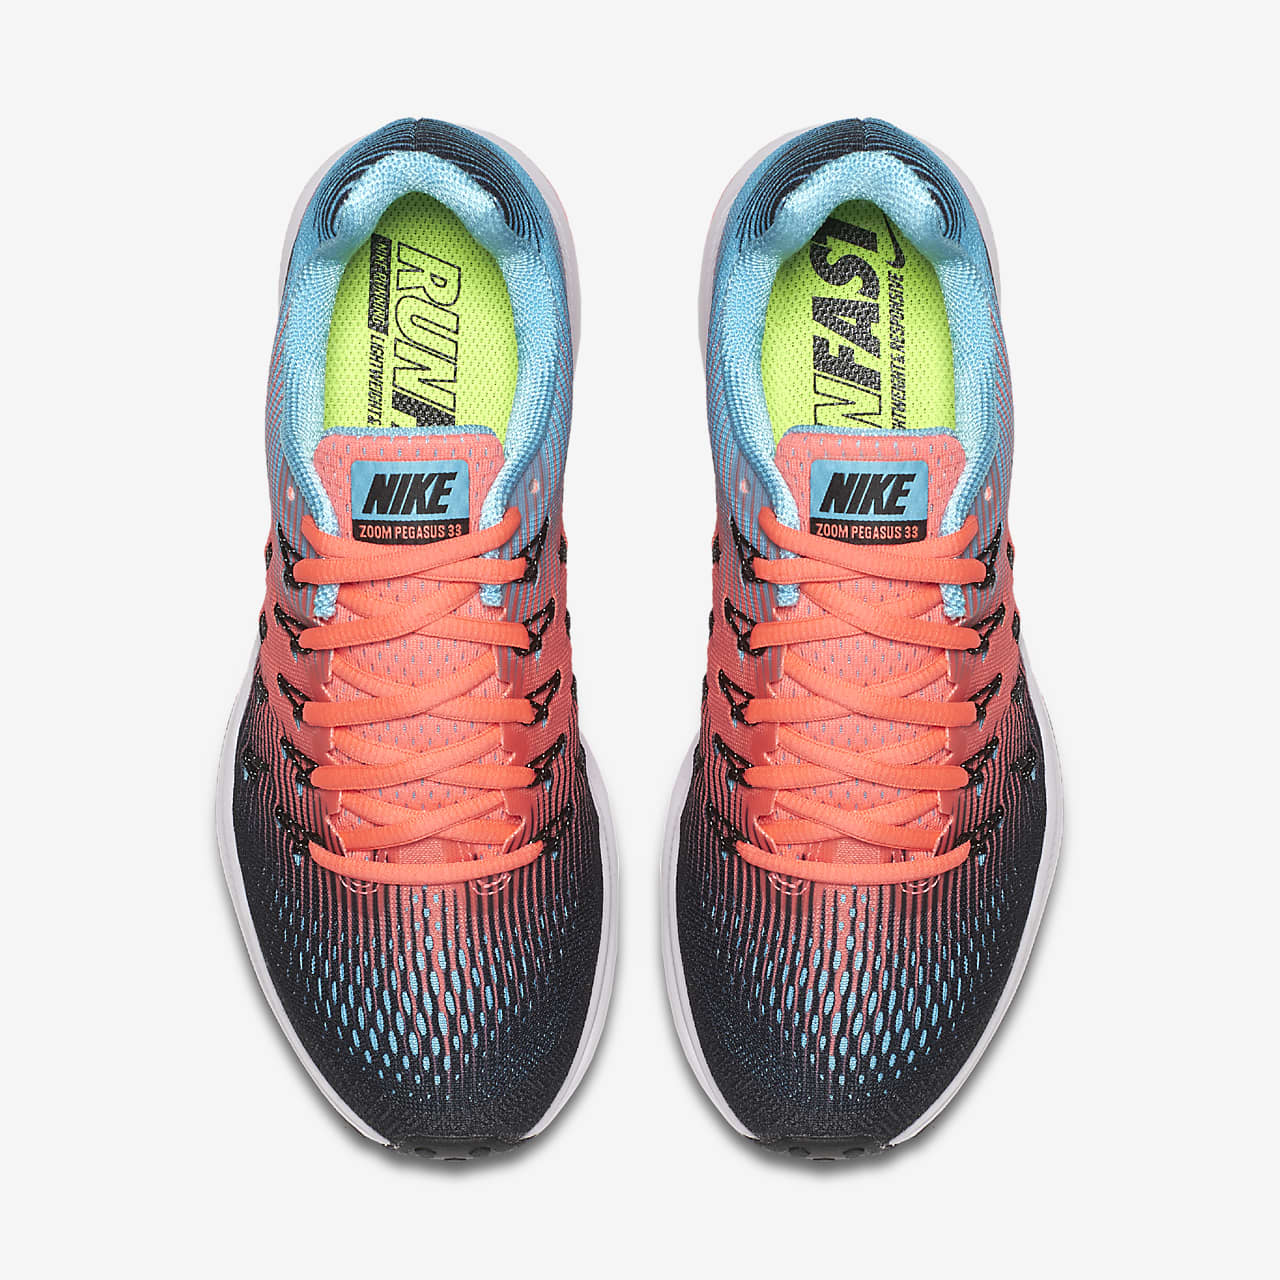 Nike Air Zoom Pegasus 33 Women's Running Shoe